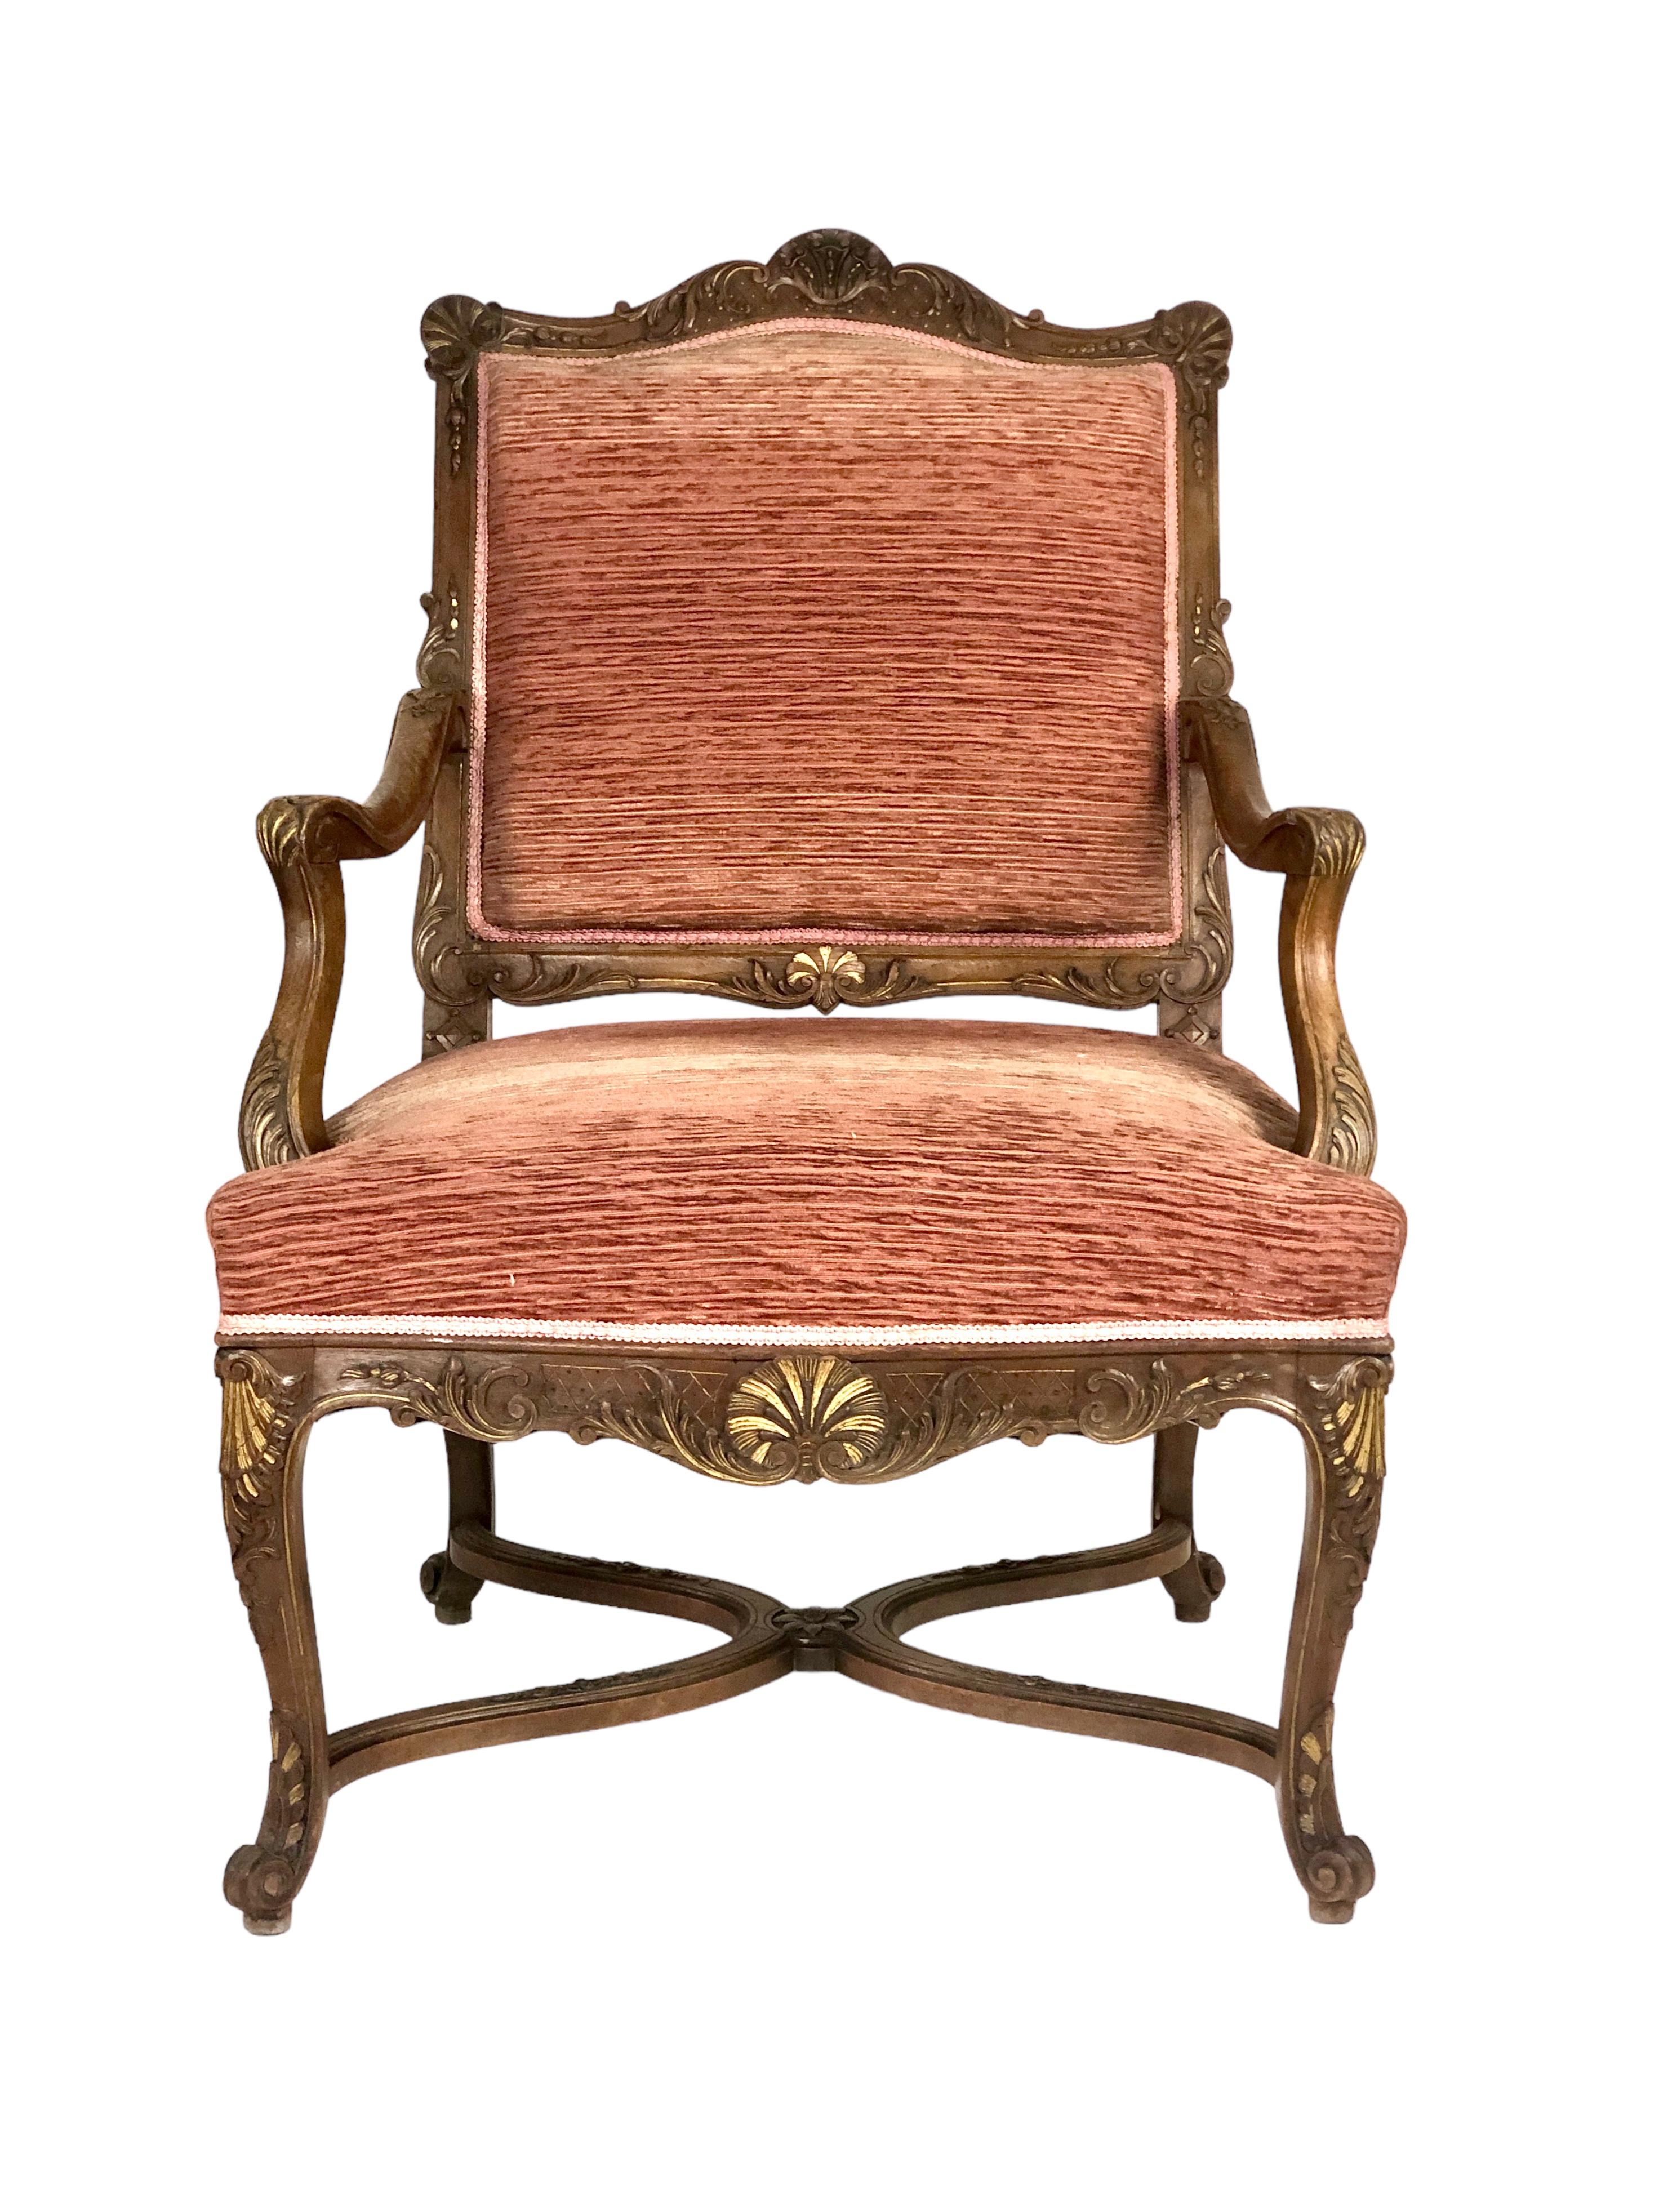 Ein hübsches Paar geformter und geschnitzter Sessel aus Nussbaumholz im Régence-Stil, gepolstert mit Terracotta-Velours. Obwohl sehr ähnlich, sind diese Stühle nicht ganz identisch. Sie sind leicht unterschiedlich groß, wobei die eine mit einem